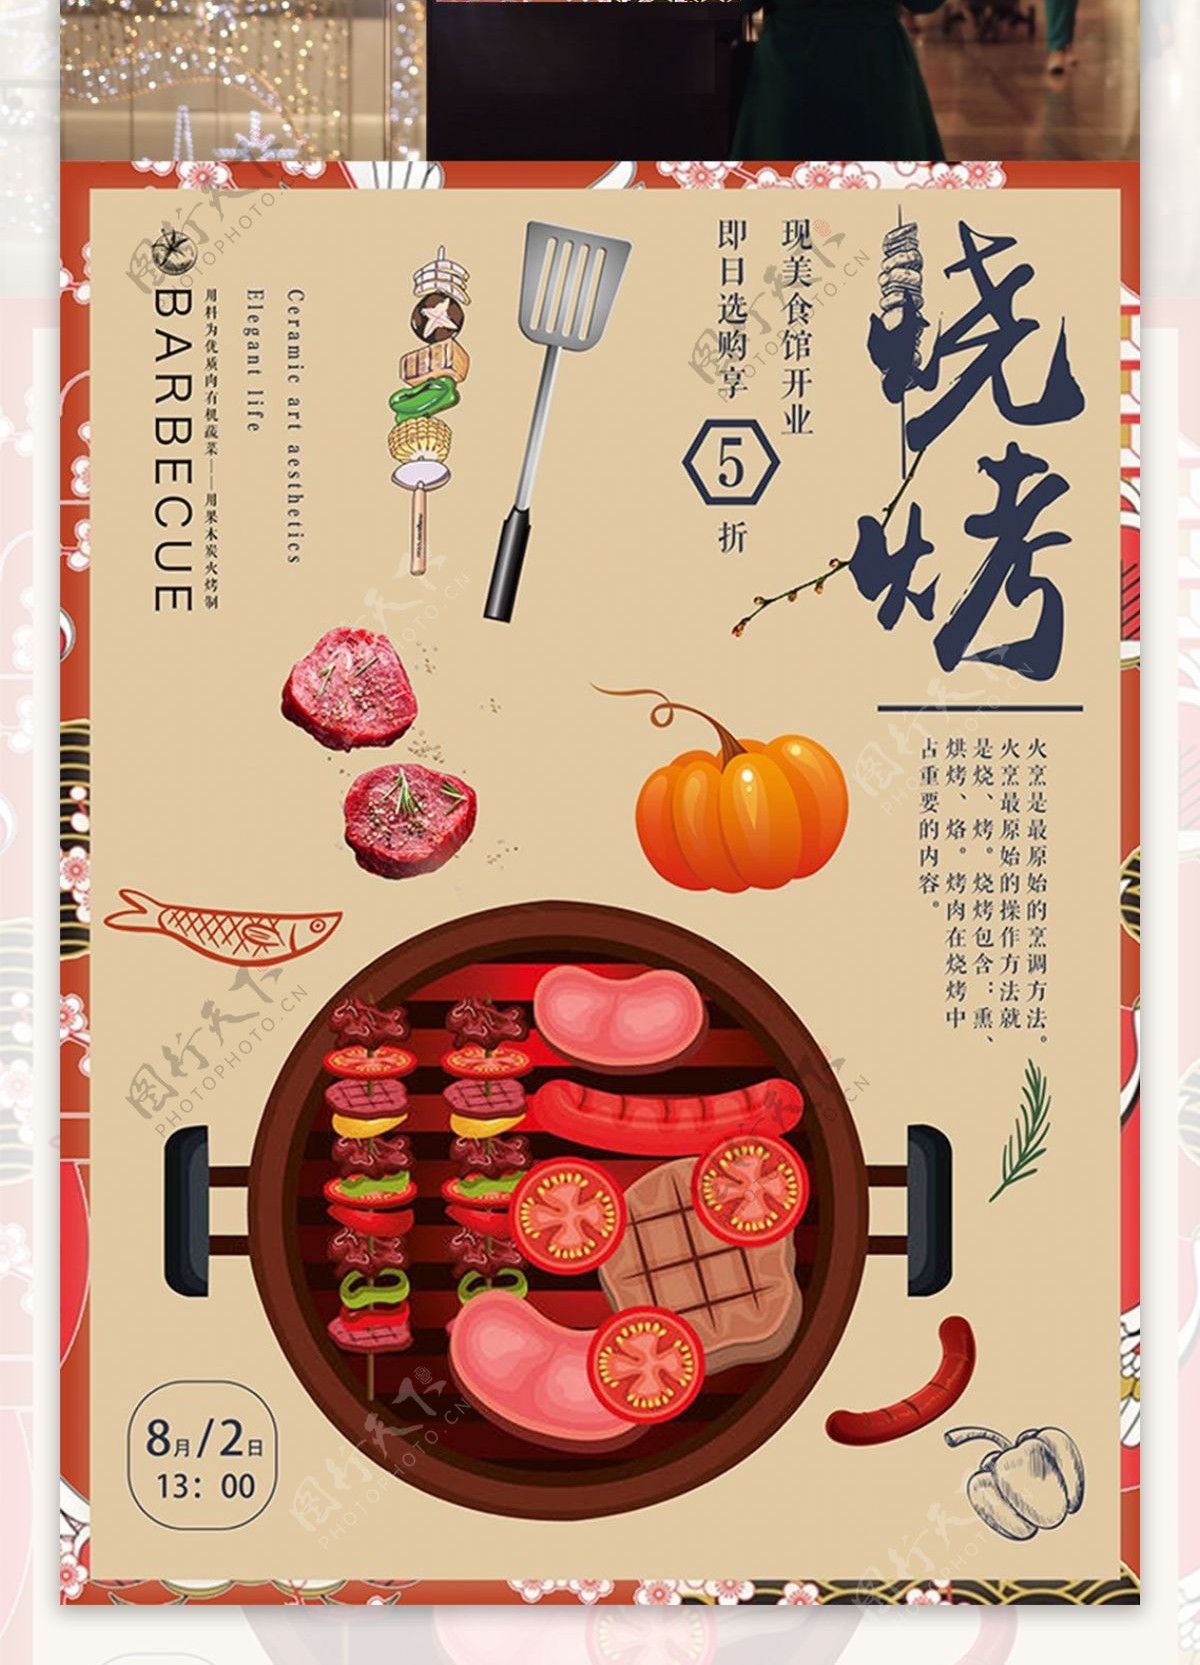 美食烧烤中国风简约手绘促销宣传海报